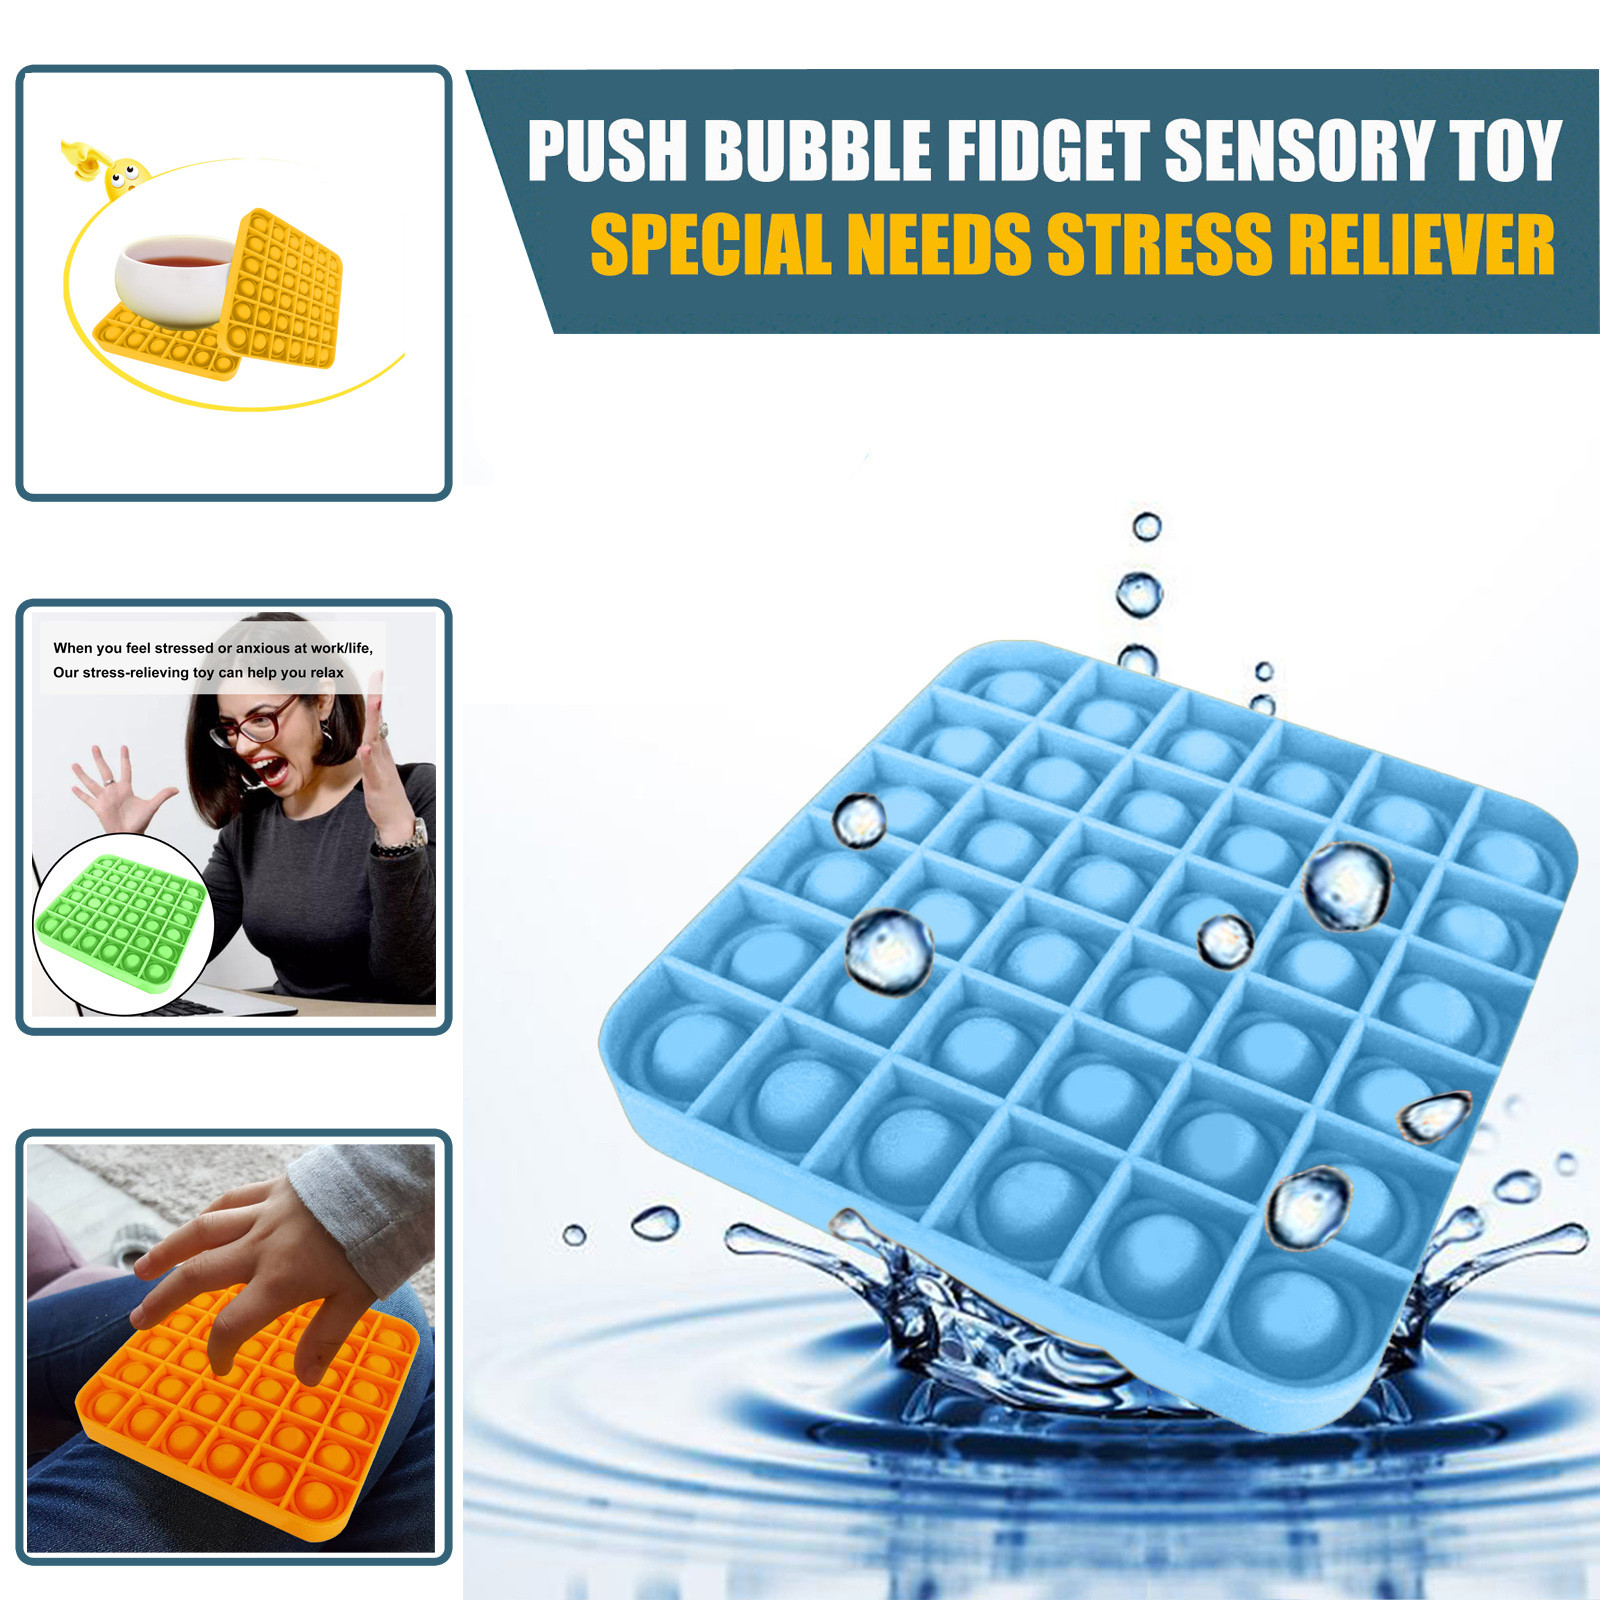 Push Bubble Fidget Sensory Toy Autism Special Needs Stress Reliever Toy Funny Children Pop-it Game Toy подарки на новый год